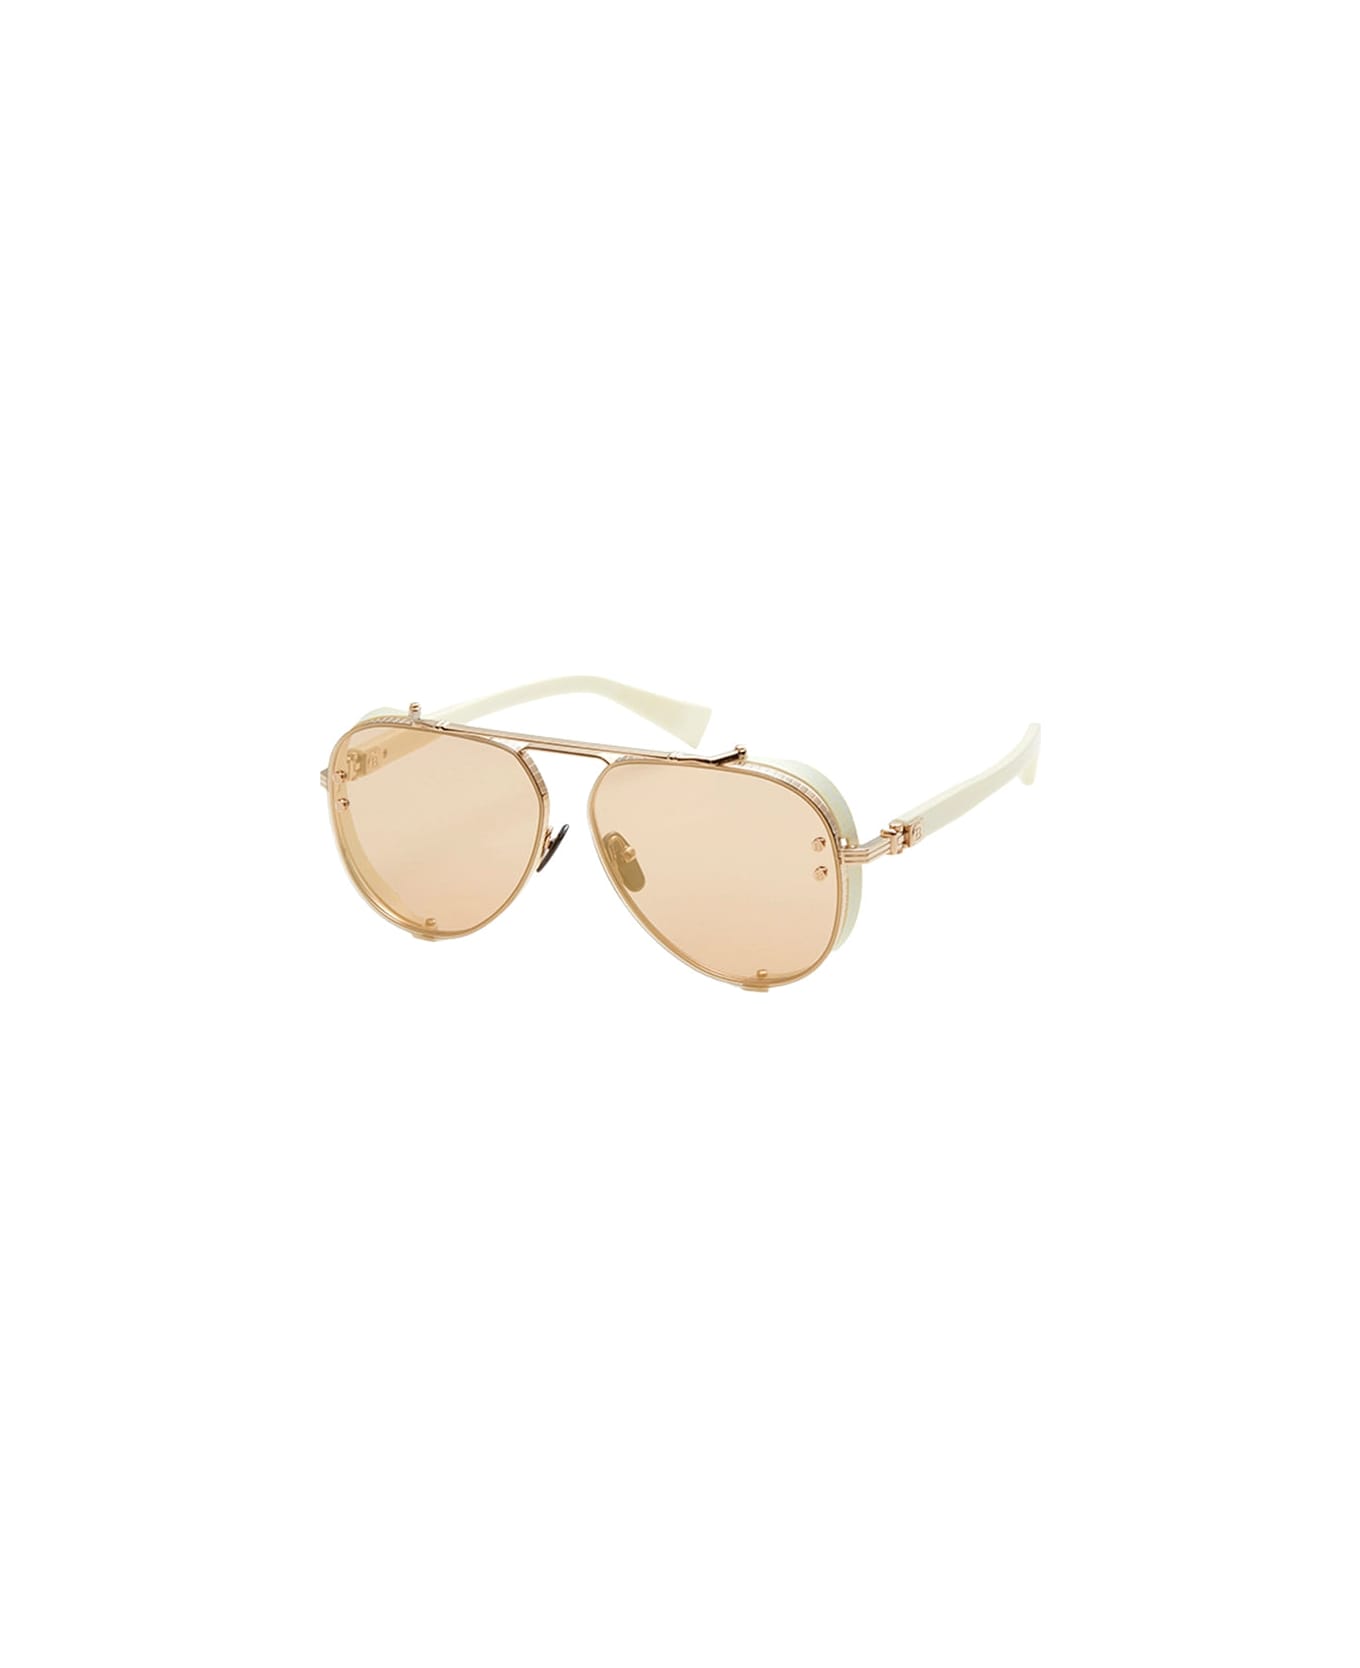 Balmain Captaine - Gold/white Sunglasses Sunglasses - gold, white bone